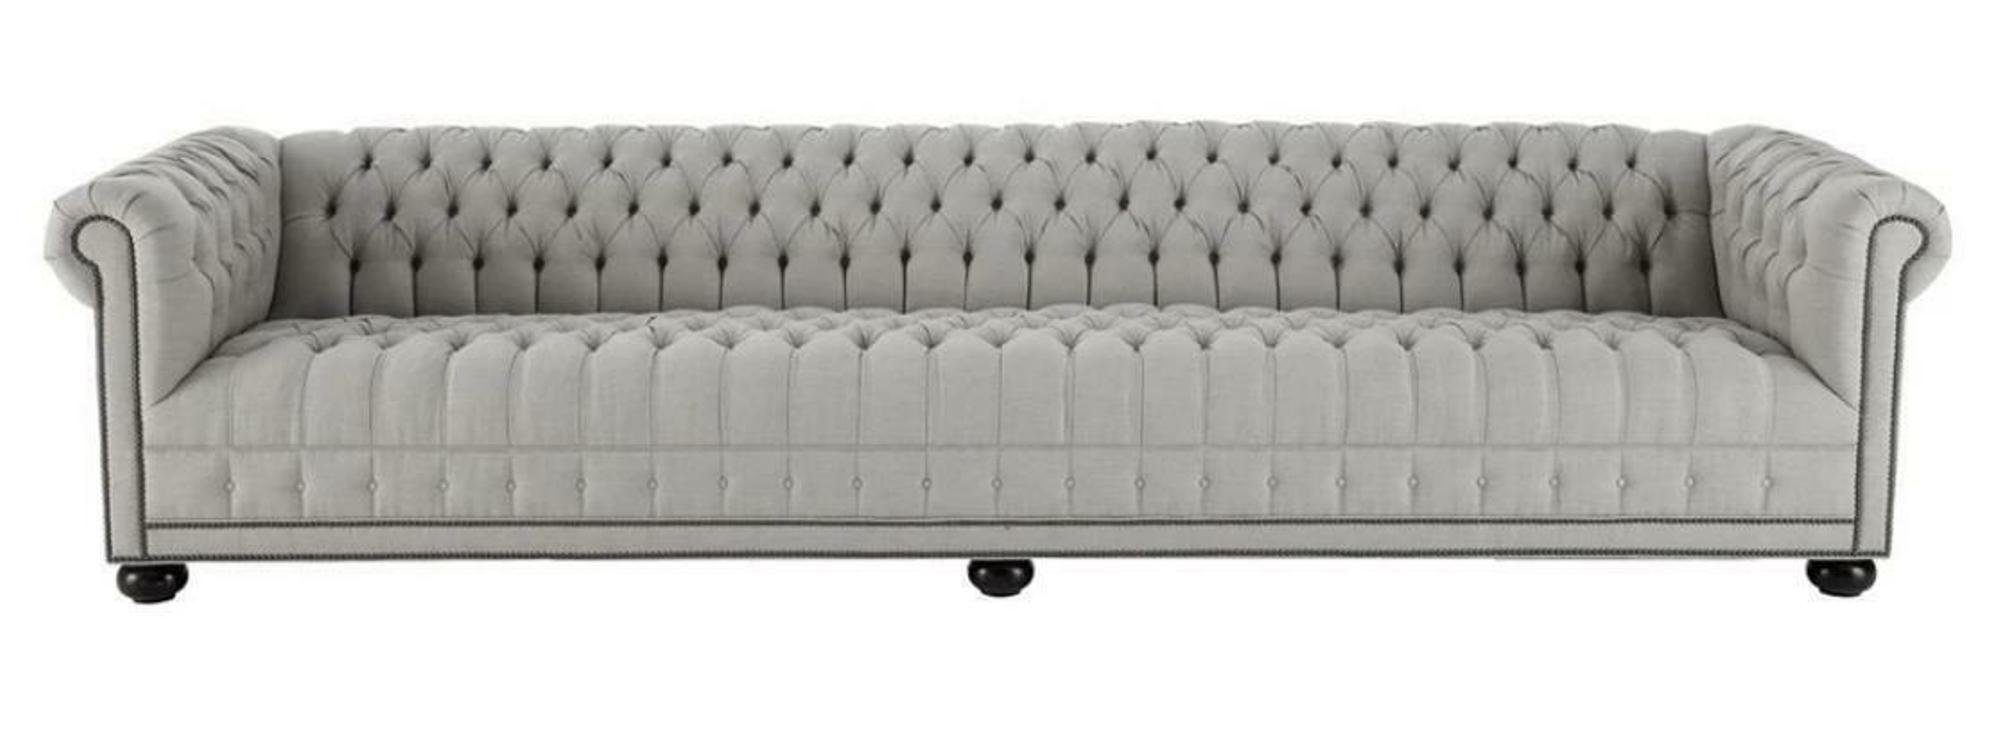 JVmoebel Chesterfield-Sofa, Creme Chesterfield Wohnzimmer Viersitzer Design Couchen Sofa Möbel Grau